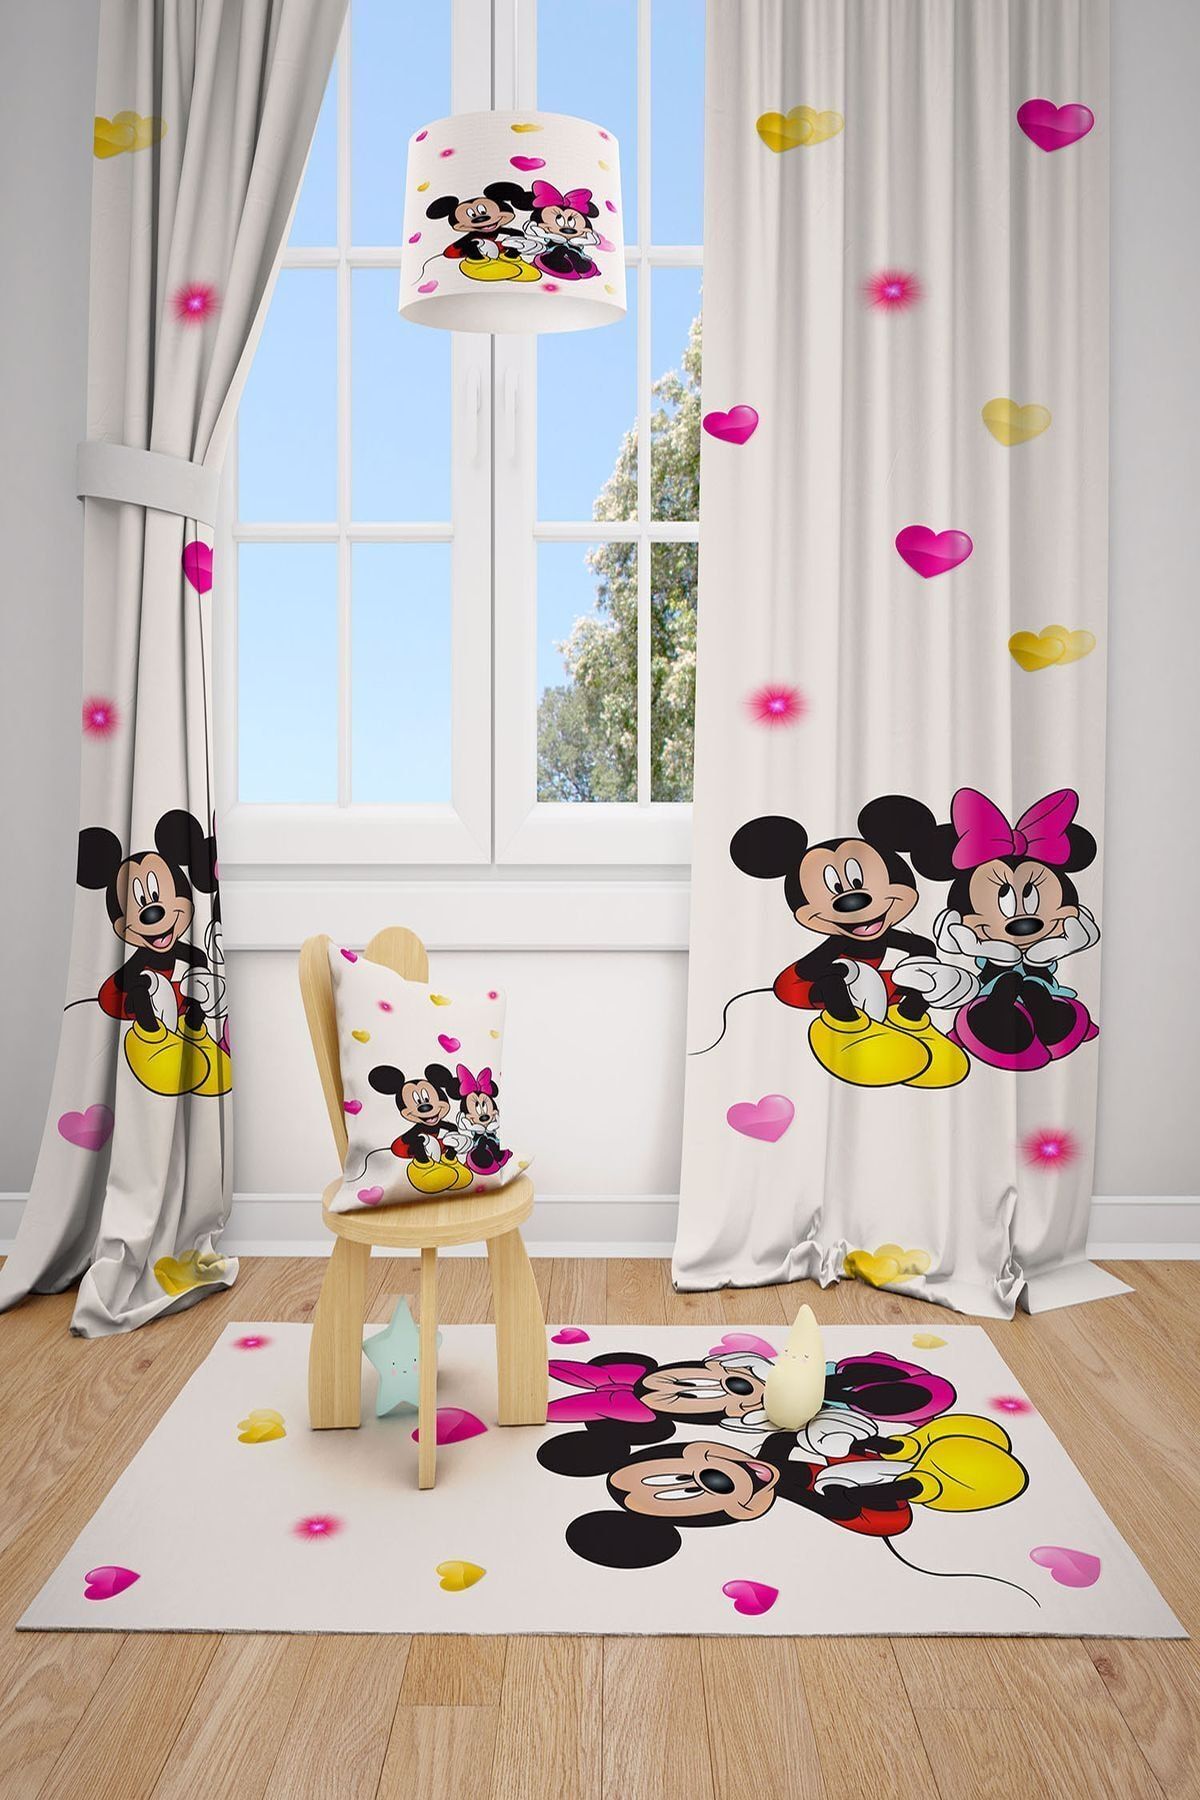 MEKTA HOME Mickey Mause Baskılı Çocuk ve Bebek Odası Fon Perdesi 2 Kanat 70x260 cm